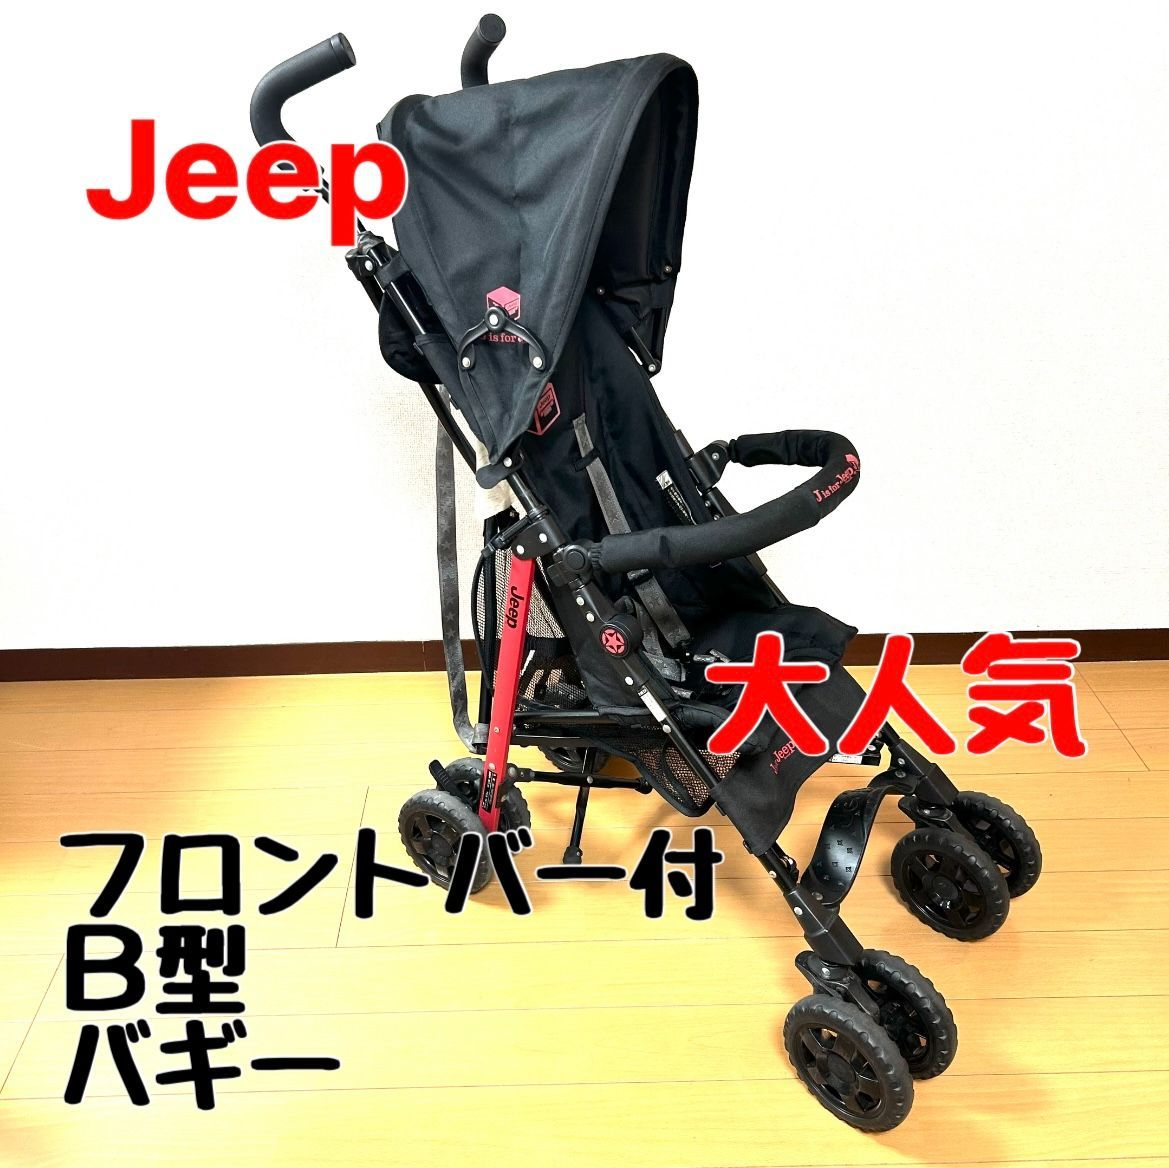 jeep ジープ B型ベビーカー バギー レッド - 移動用品